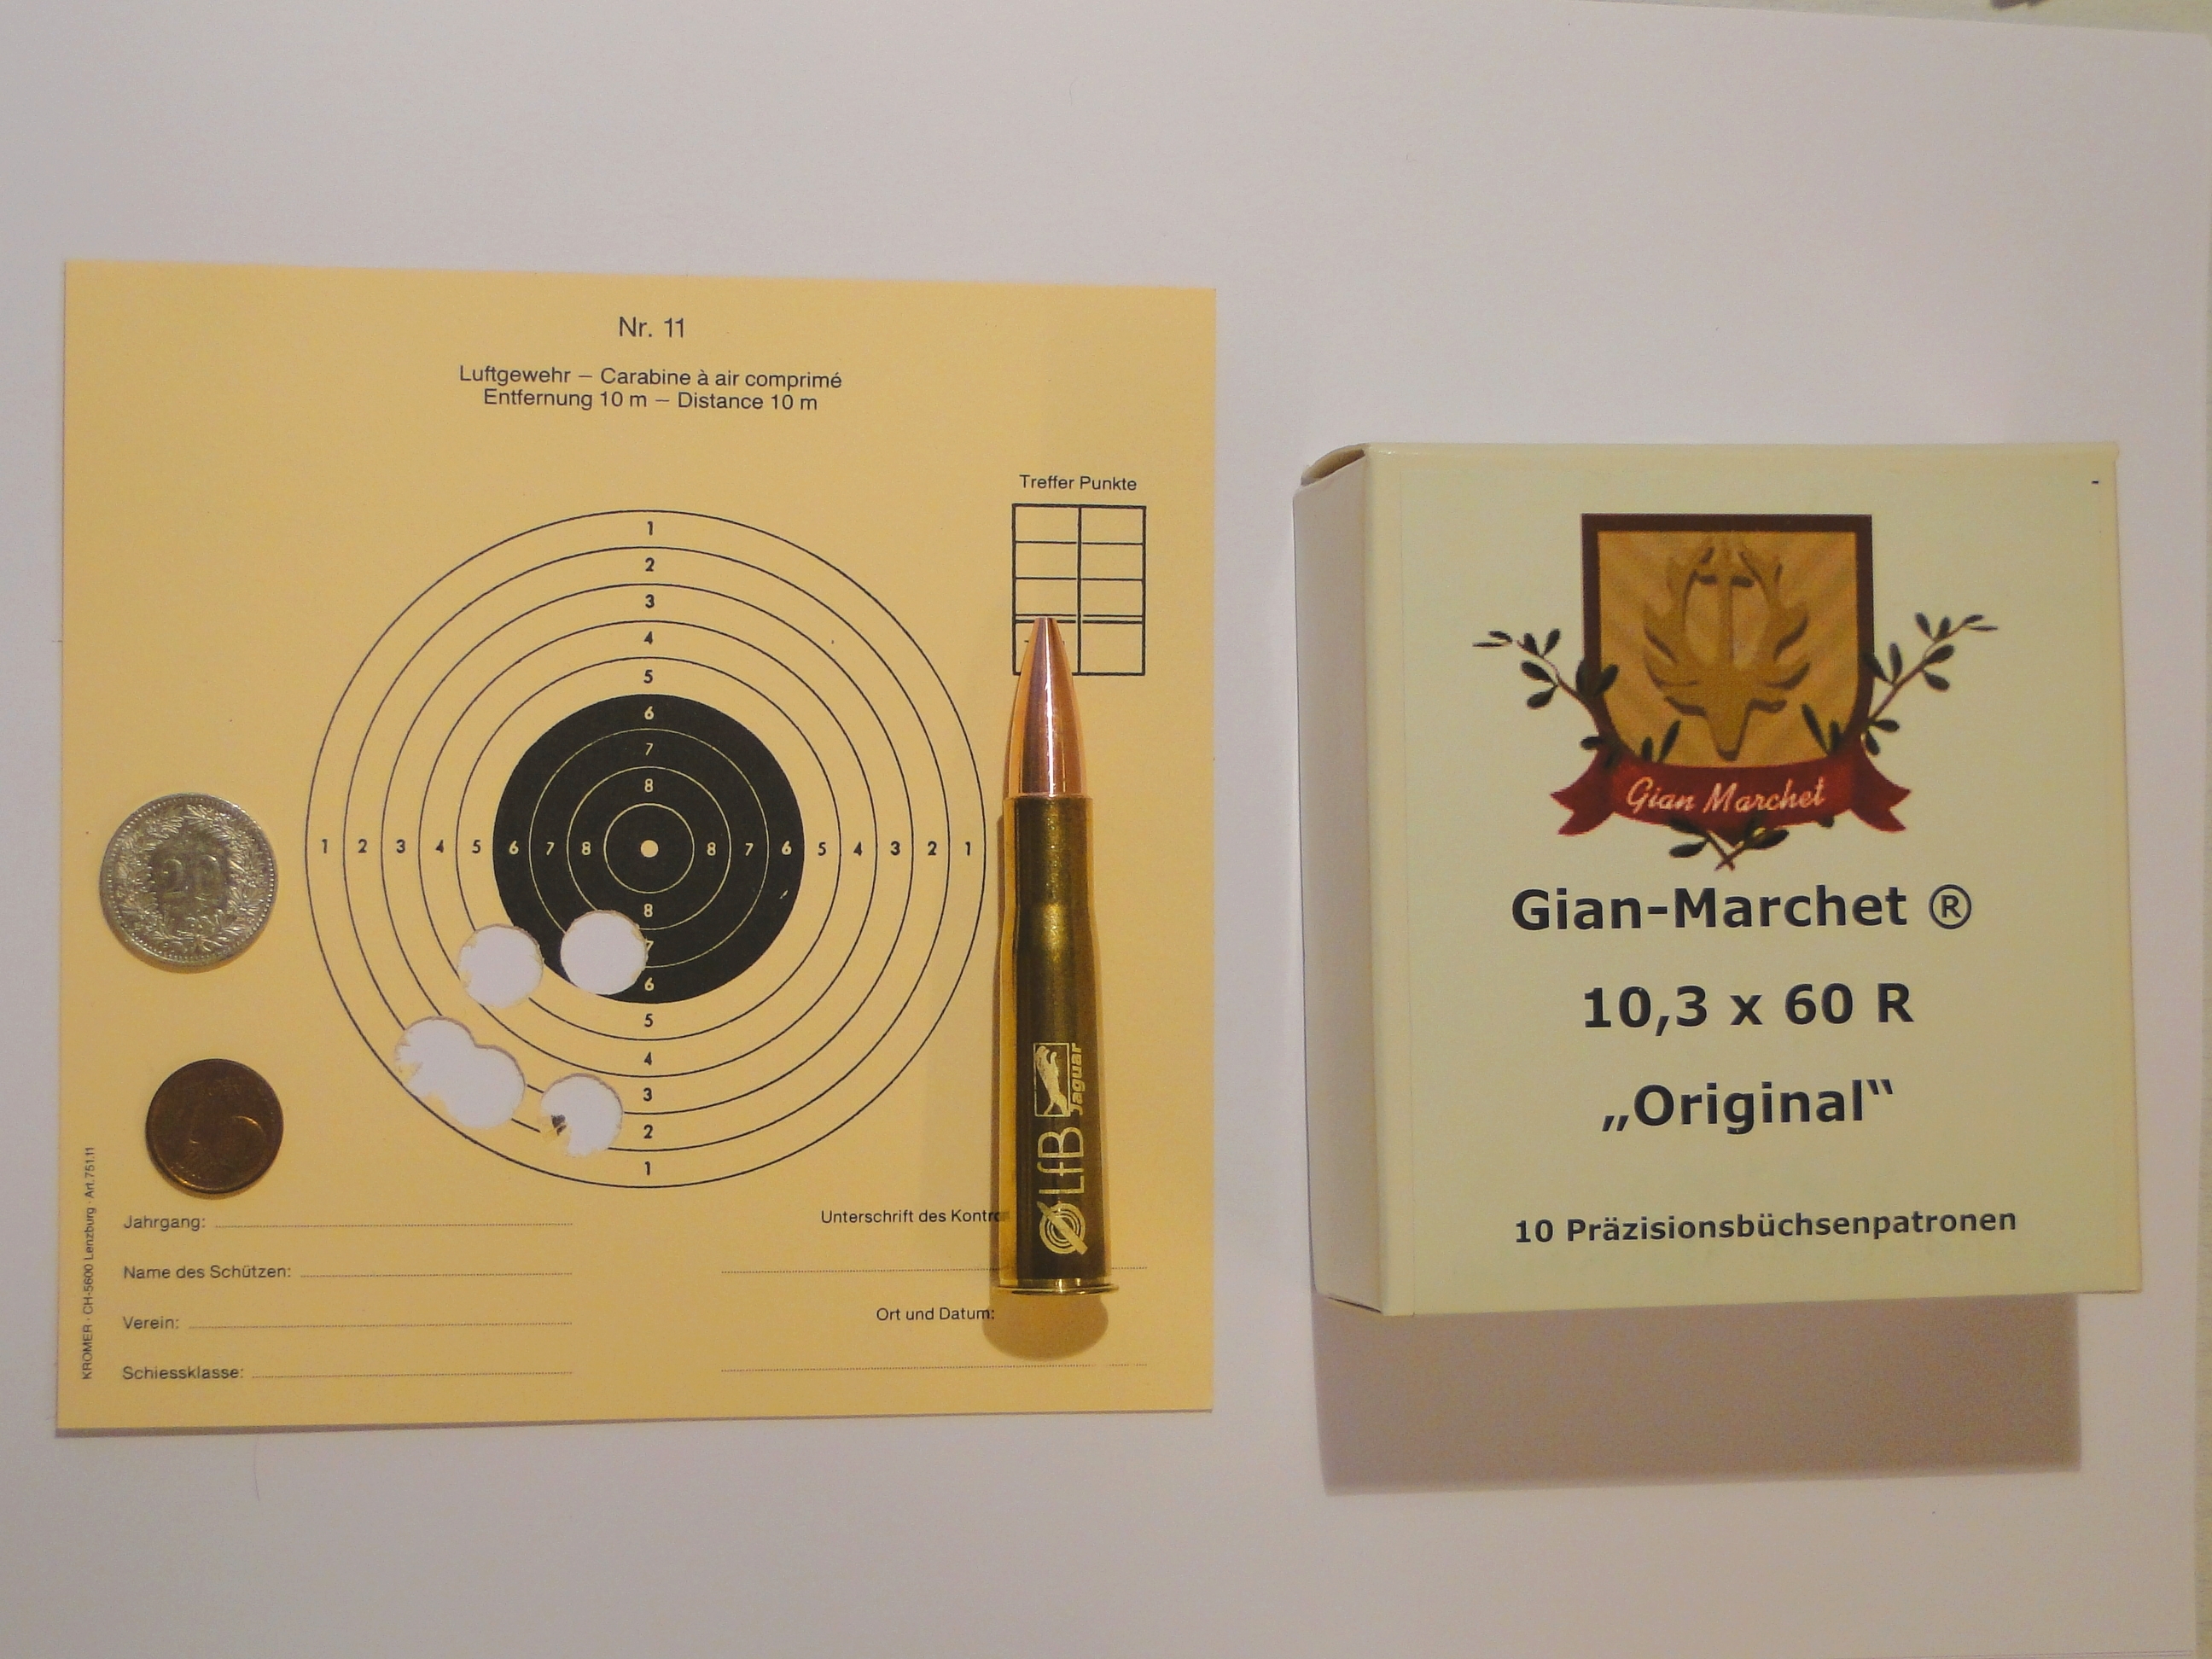 3. Scheibe mit Gian-Marchet® "Original" - 5 Schuss auf 100 Meter Distanz...